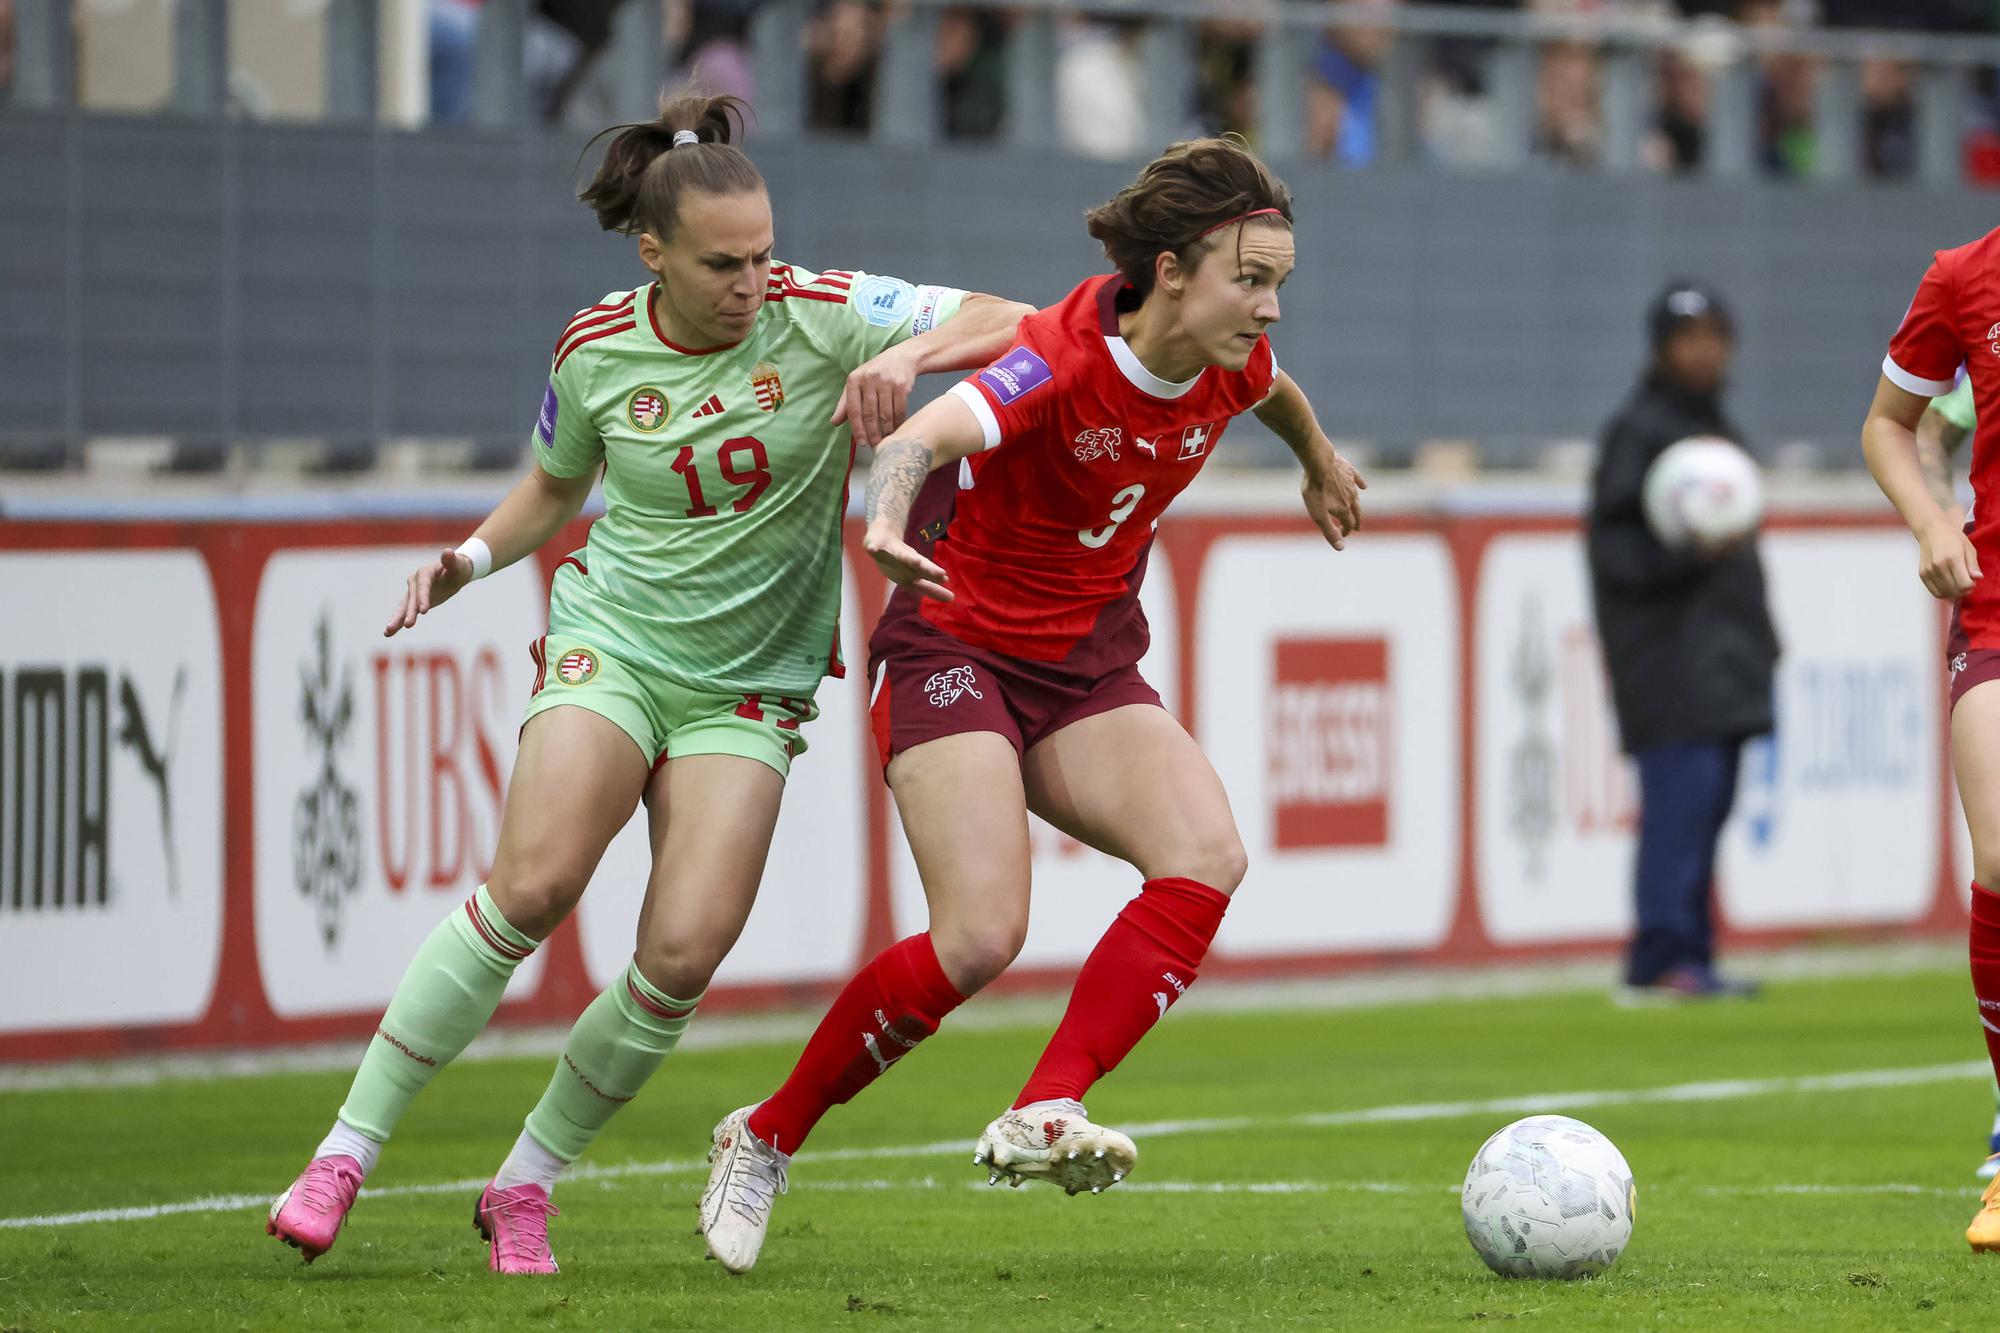 Larina Baumann a réussi ses débuts avec l'équipe de Suisse. [IMAGO/Steinsiek.ch - Grant Hubbs]